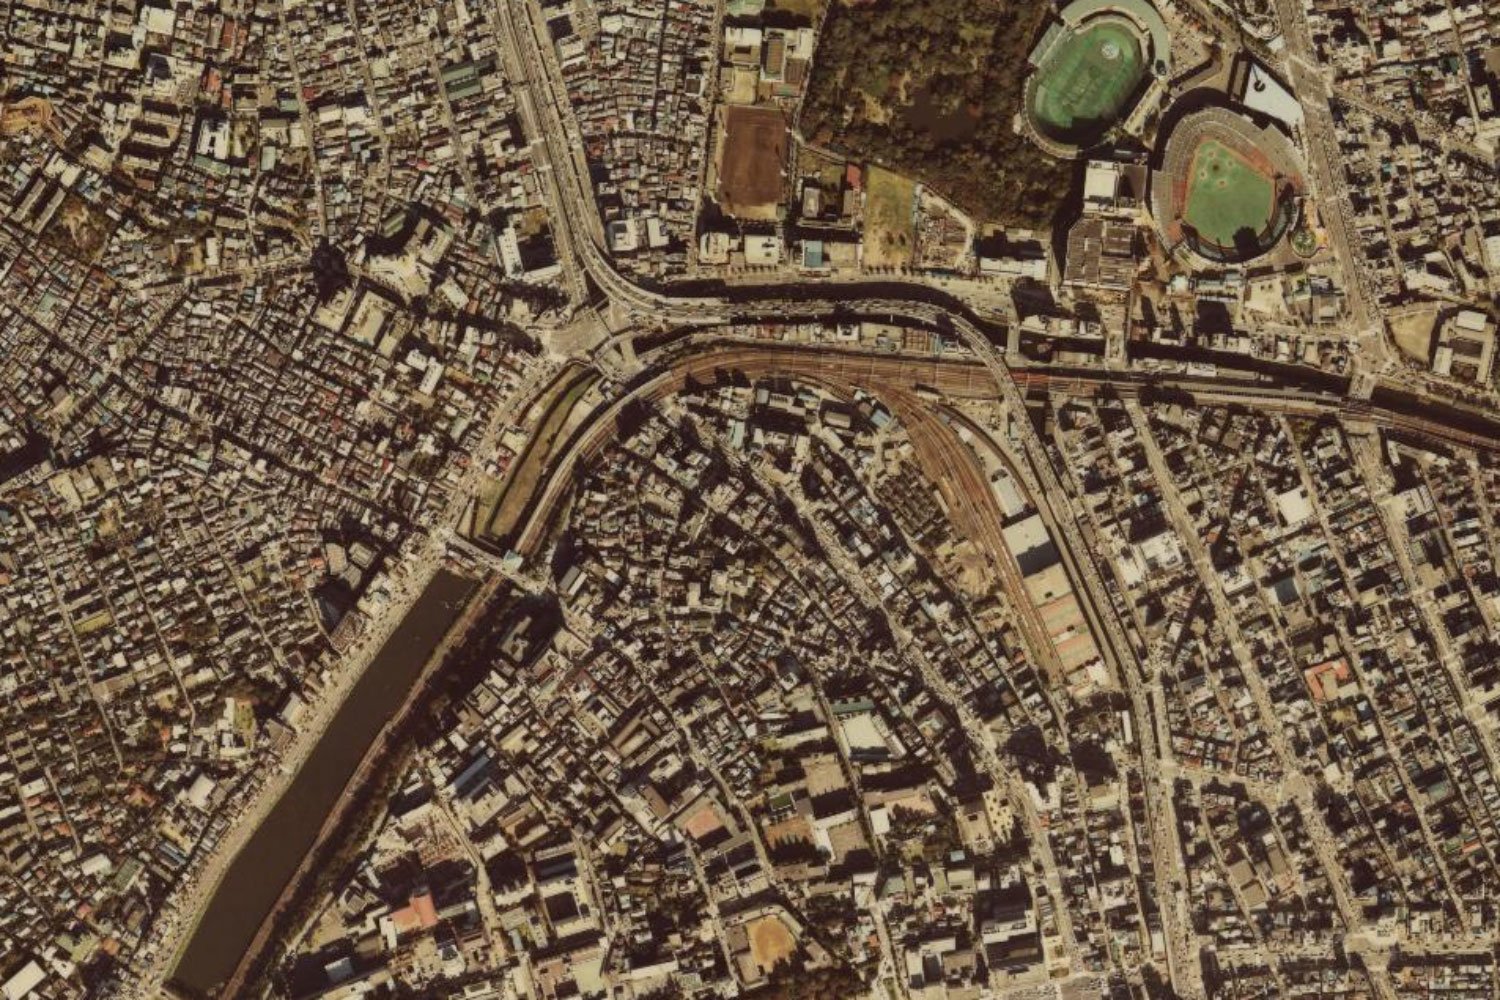 中央にあるのが飯田橋駅。その右下に飯田町駅の引き込み線が見える。（出典＝国土地理院撮影の空中写真〈1980年ごろ撮影〉）